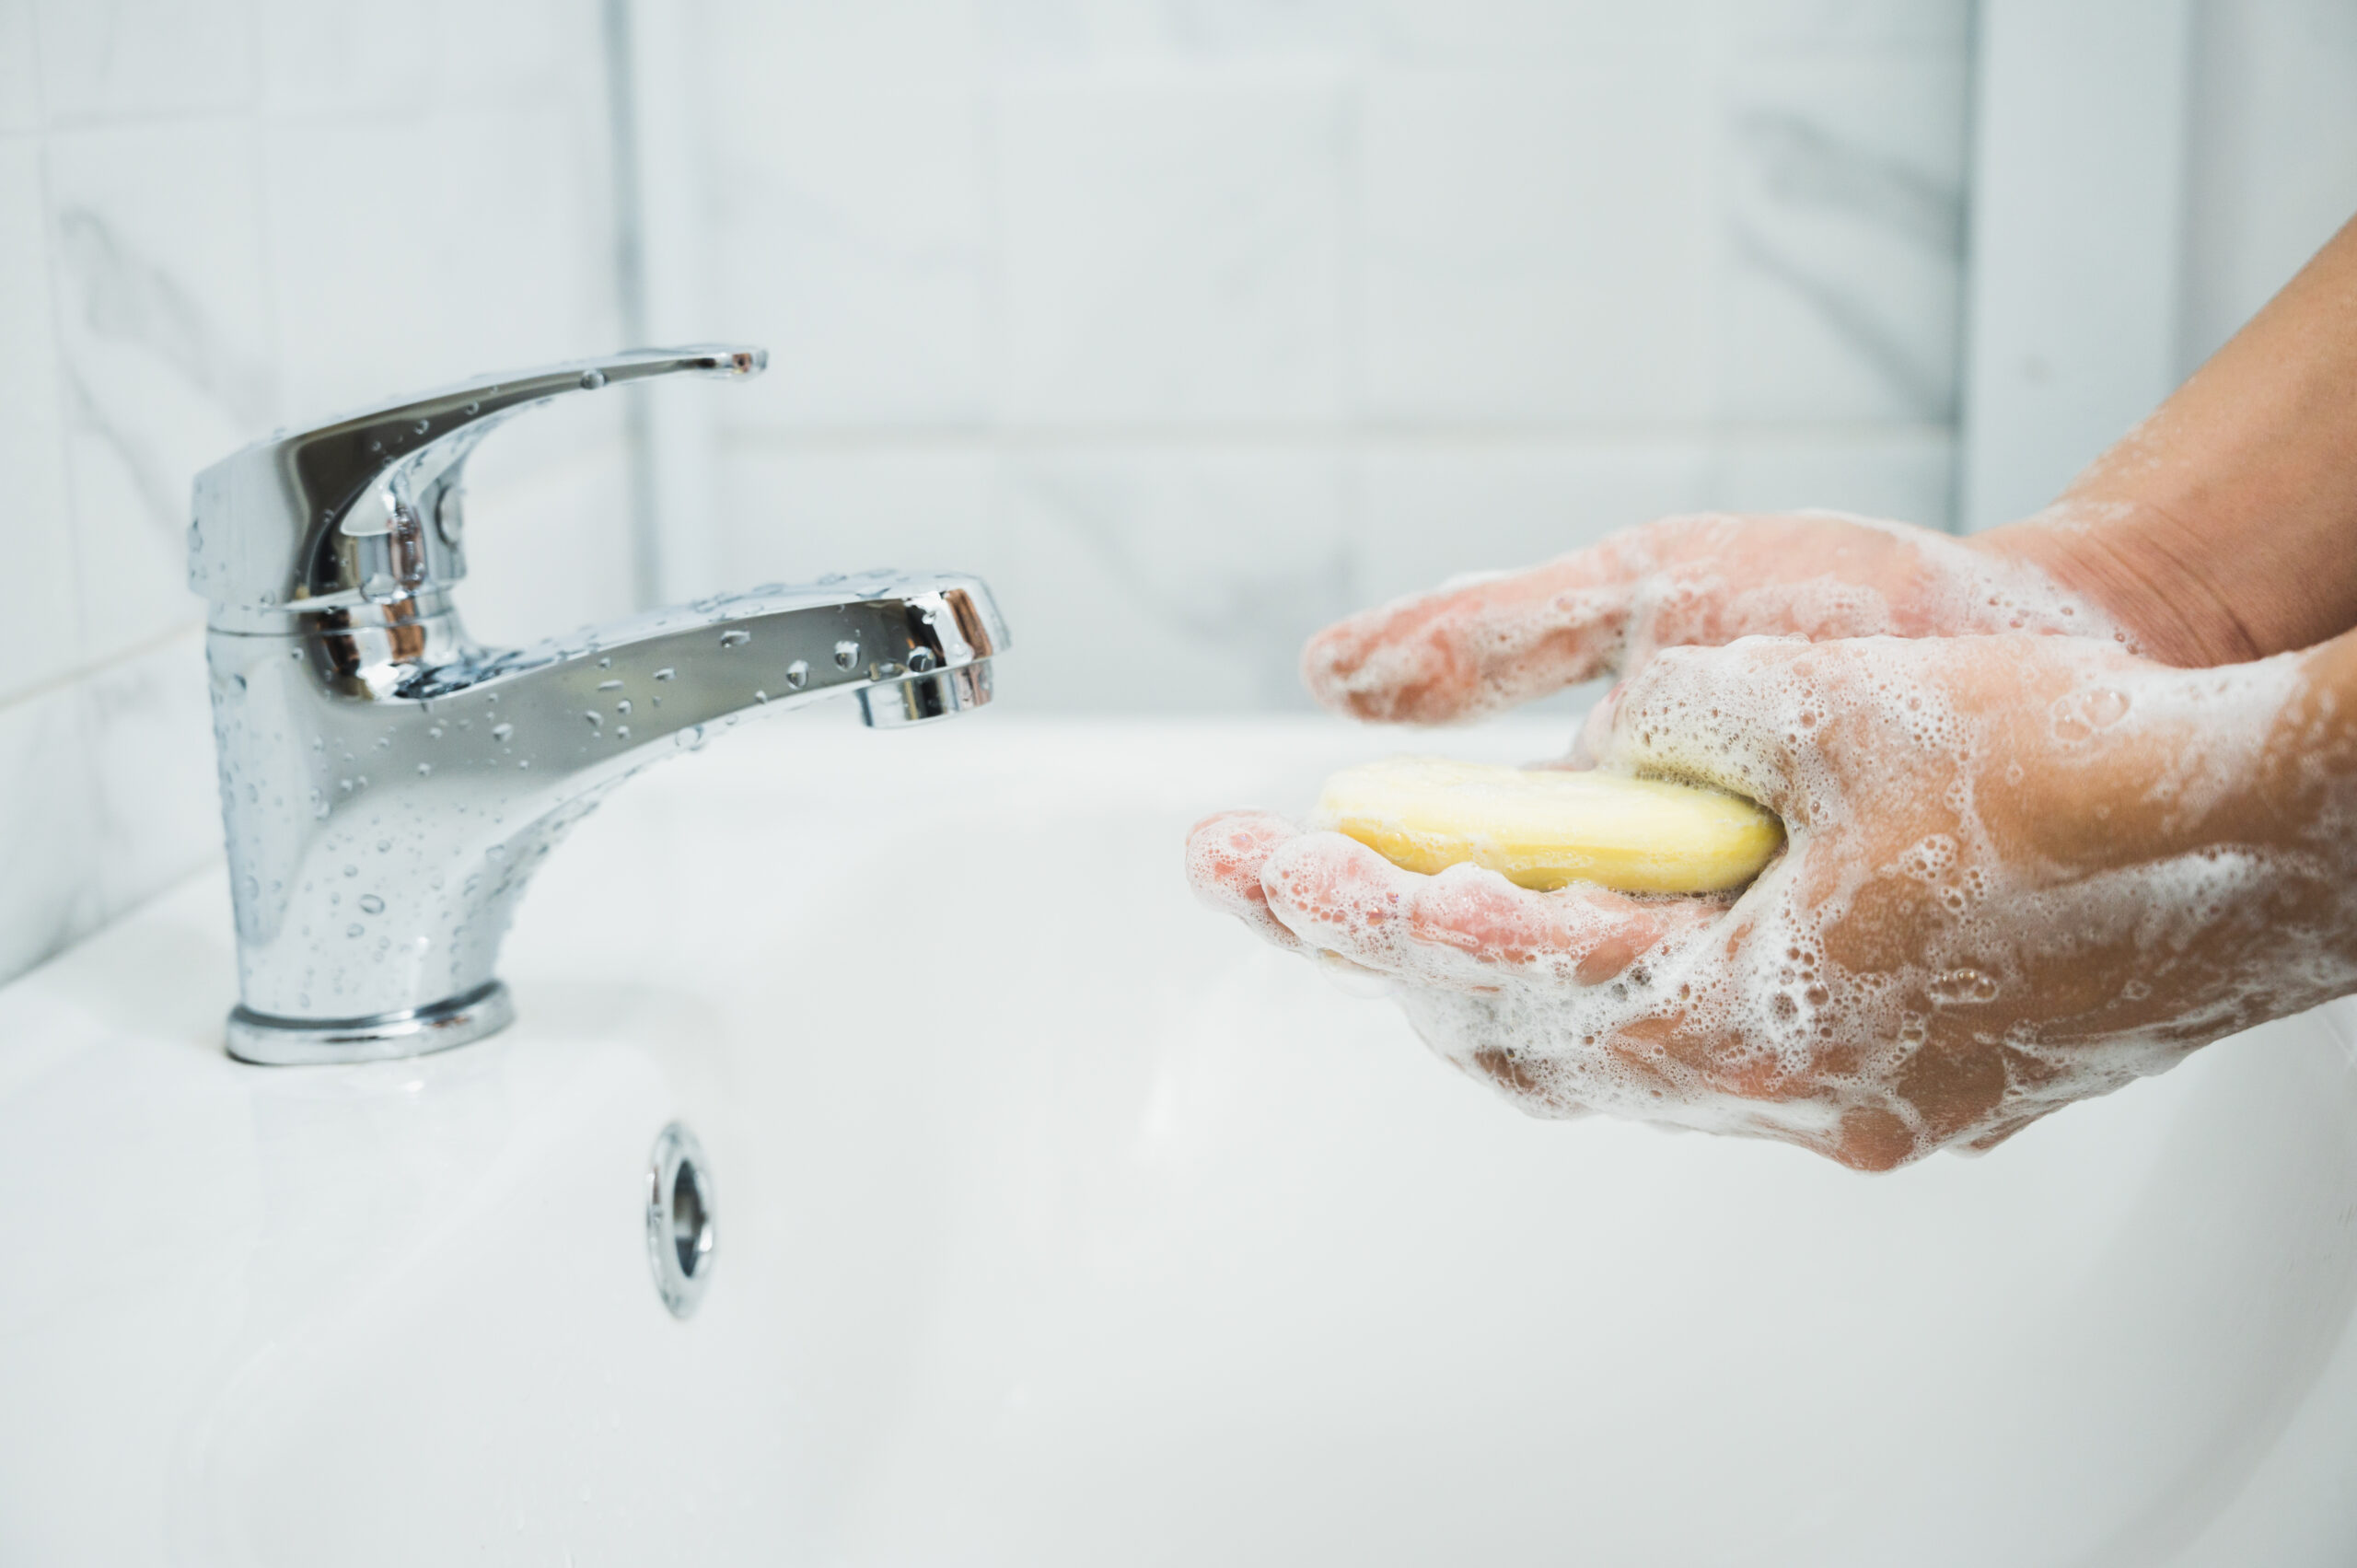 Na obrazku widać osobę stojącą przy umywalce i myjącą ręce. Używa ona płynu do mycia rąk i starannie spłukuje wodą, aby zapewnić odpowiednią higienę. Gest i wyraz twarzy świadczą o zaangażowaniu w proces mycia, co podkreśla znaczenie tego działania dla zdrowia i ochrony przed chorobami.